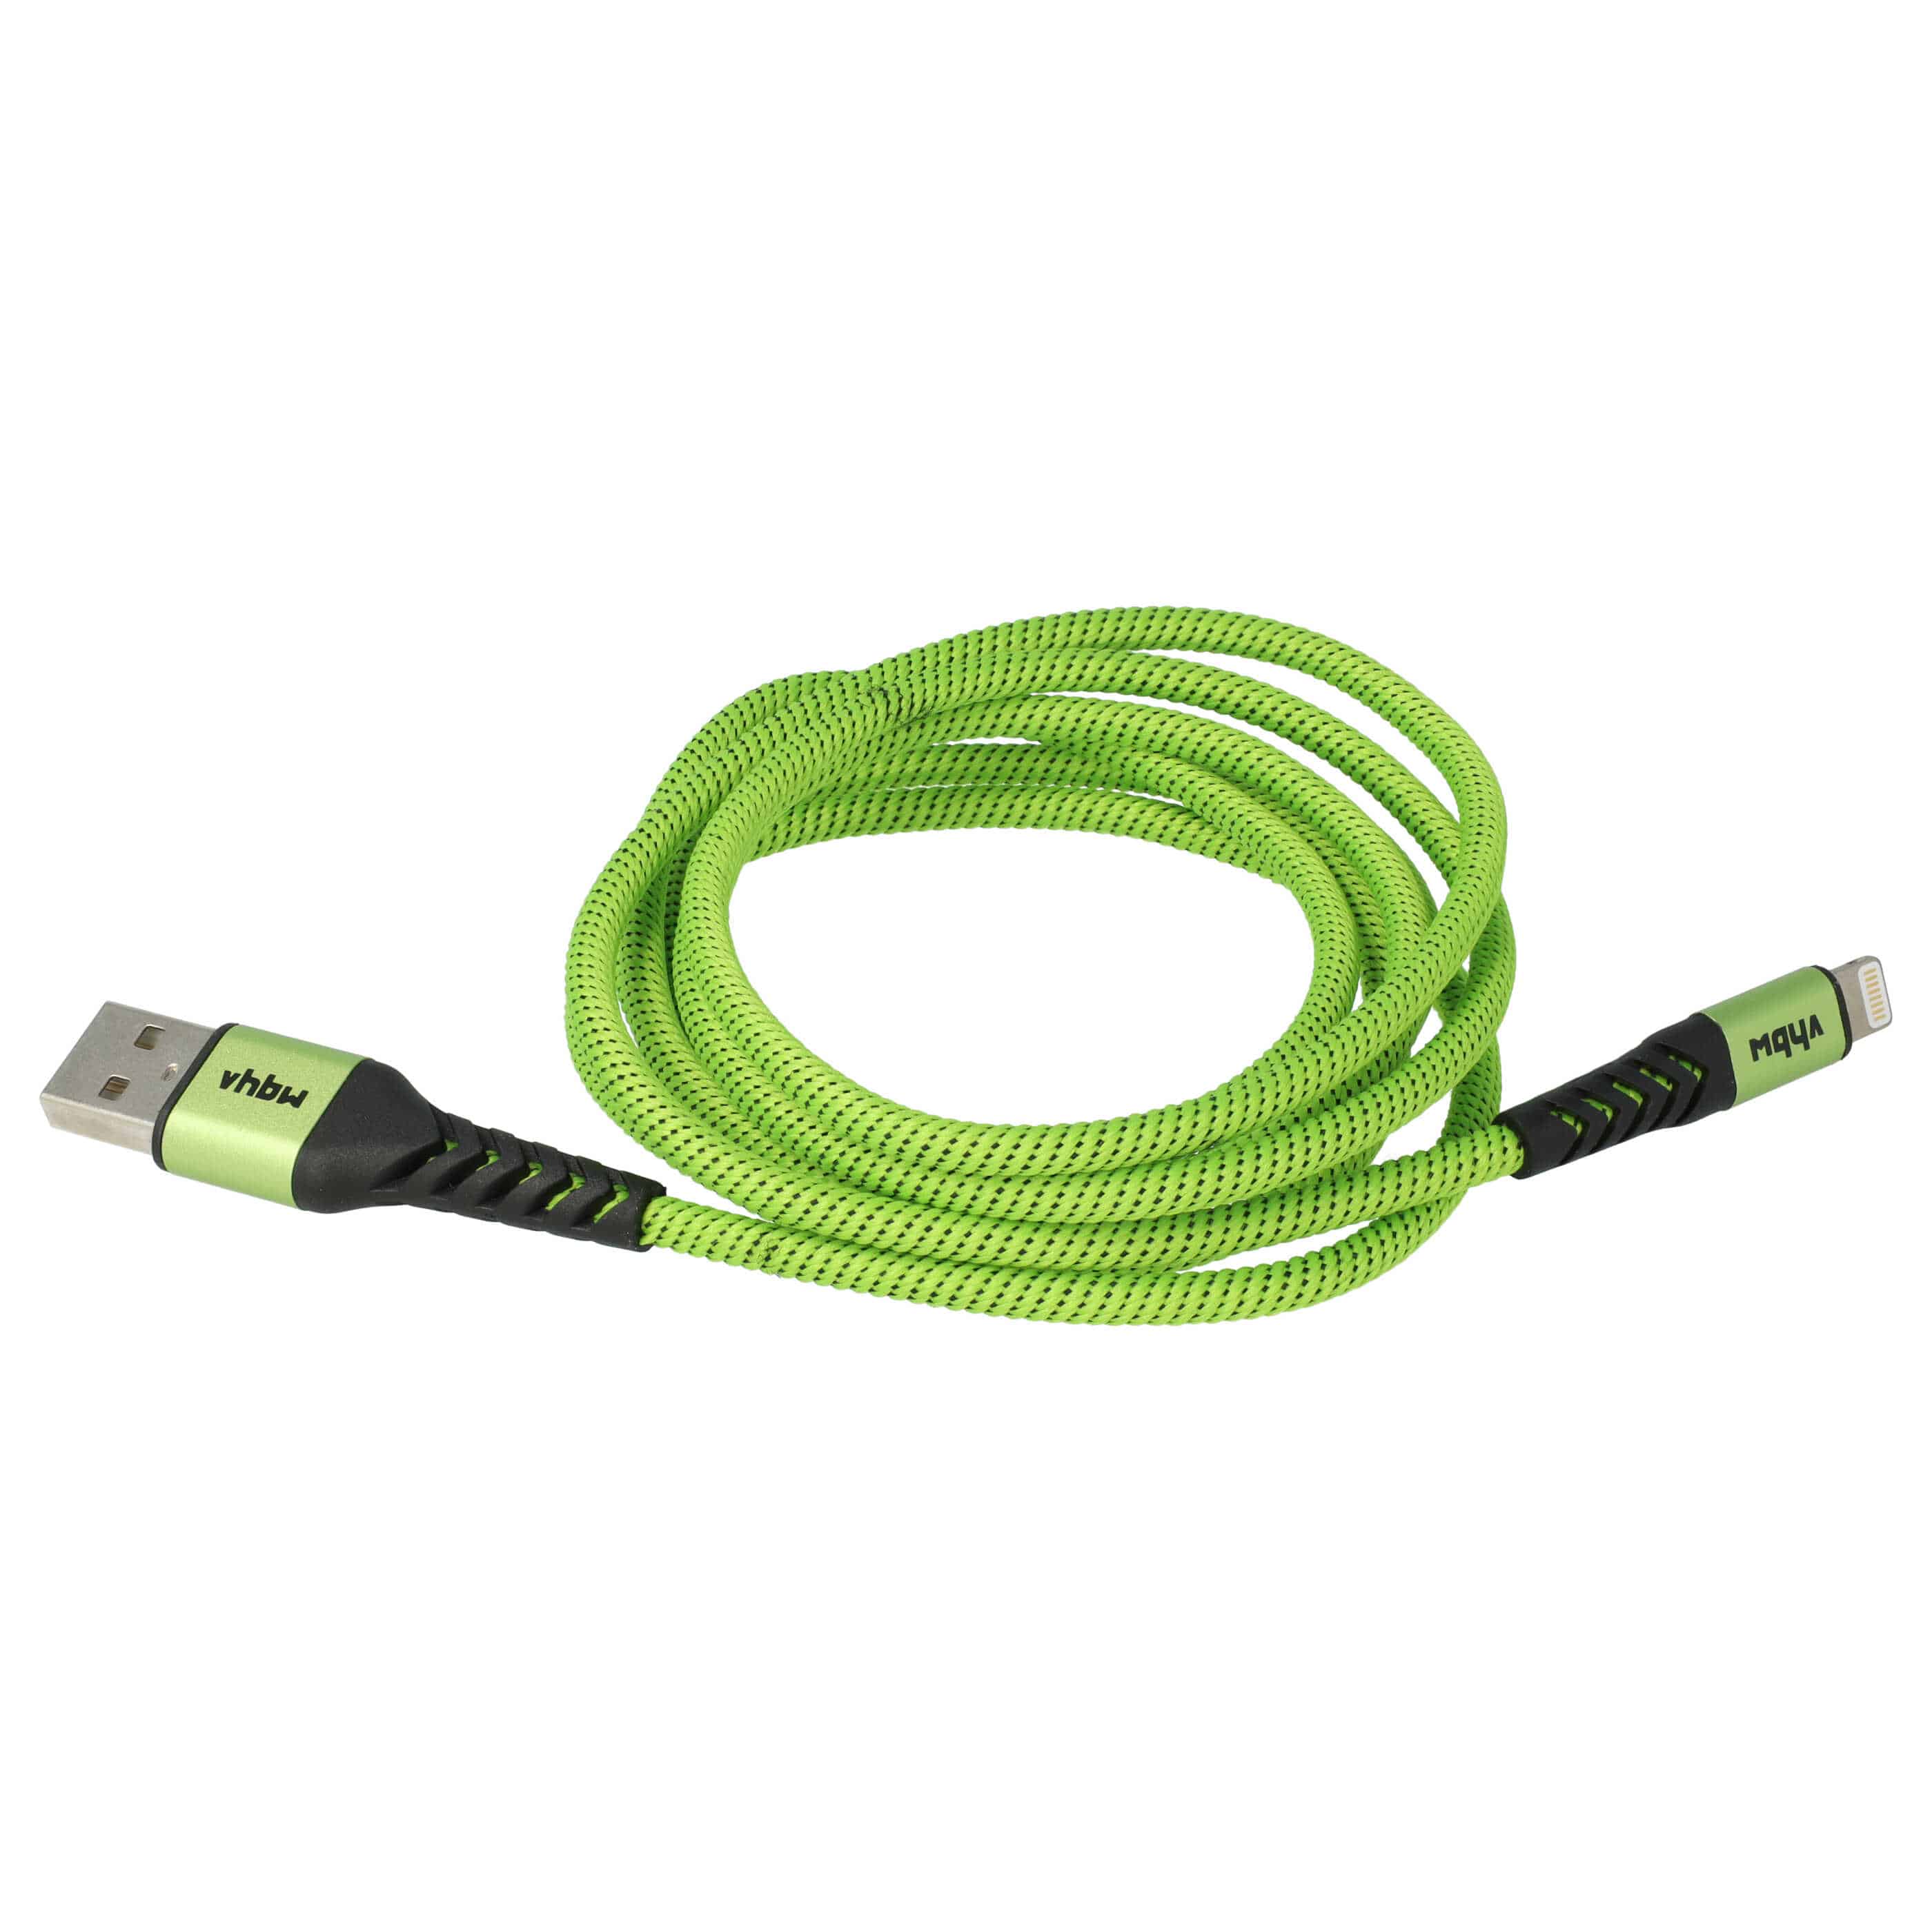 Cavo lightning - USB A per dispositivi Apple iOS - nero / verde, 180cm